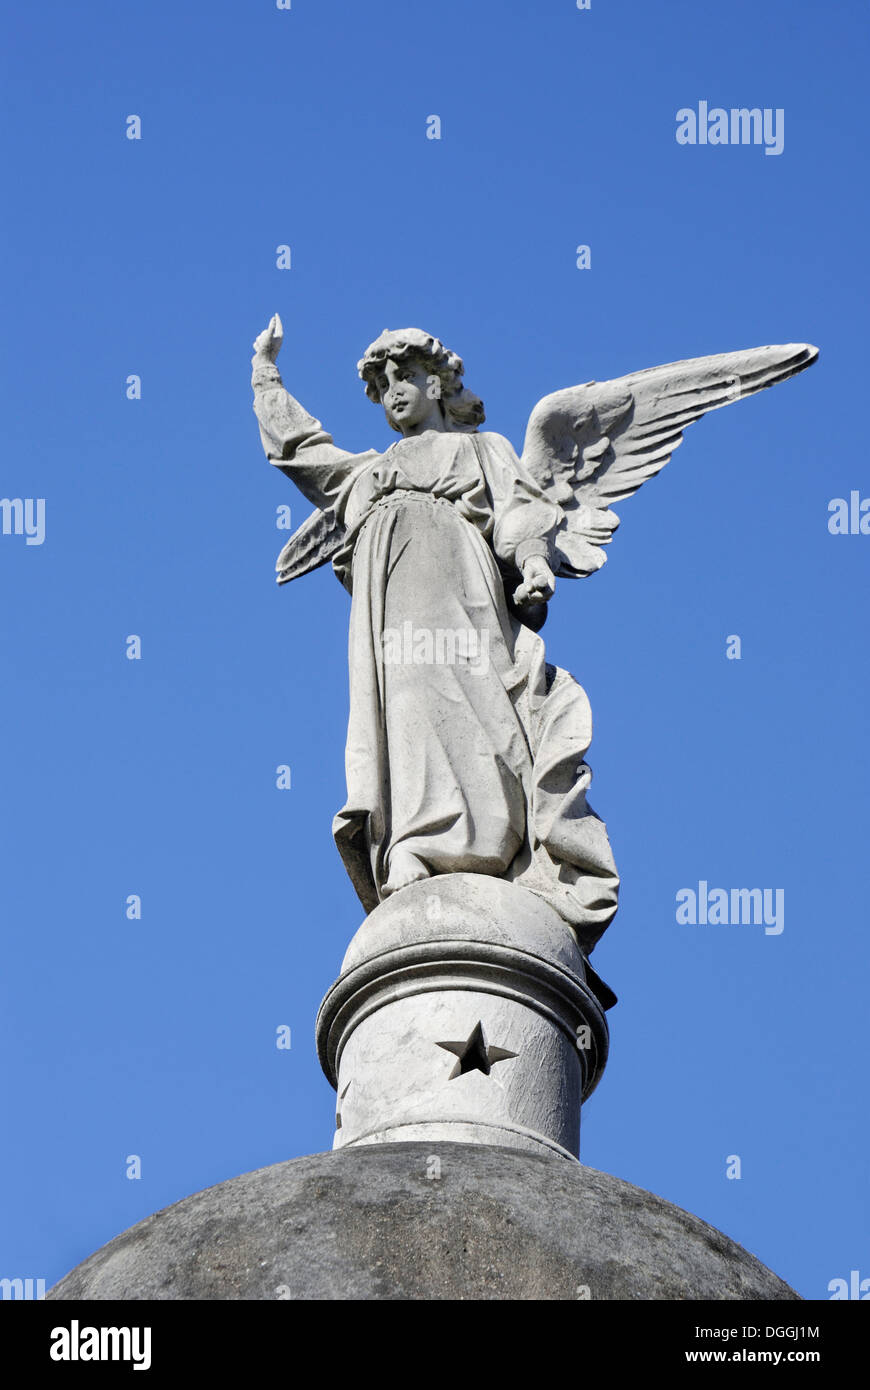 Ángel en la parte superior de un mausoleo, Cementerio de la Recoleta, el cementerio de La Recoleta, Buenos Aires, Argentina, Sudamérica Foto de stock